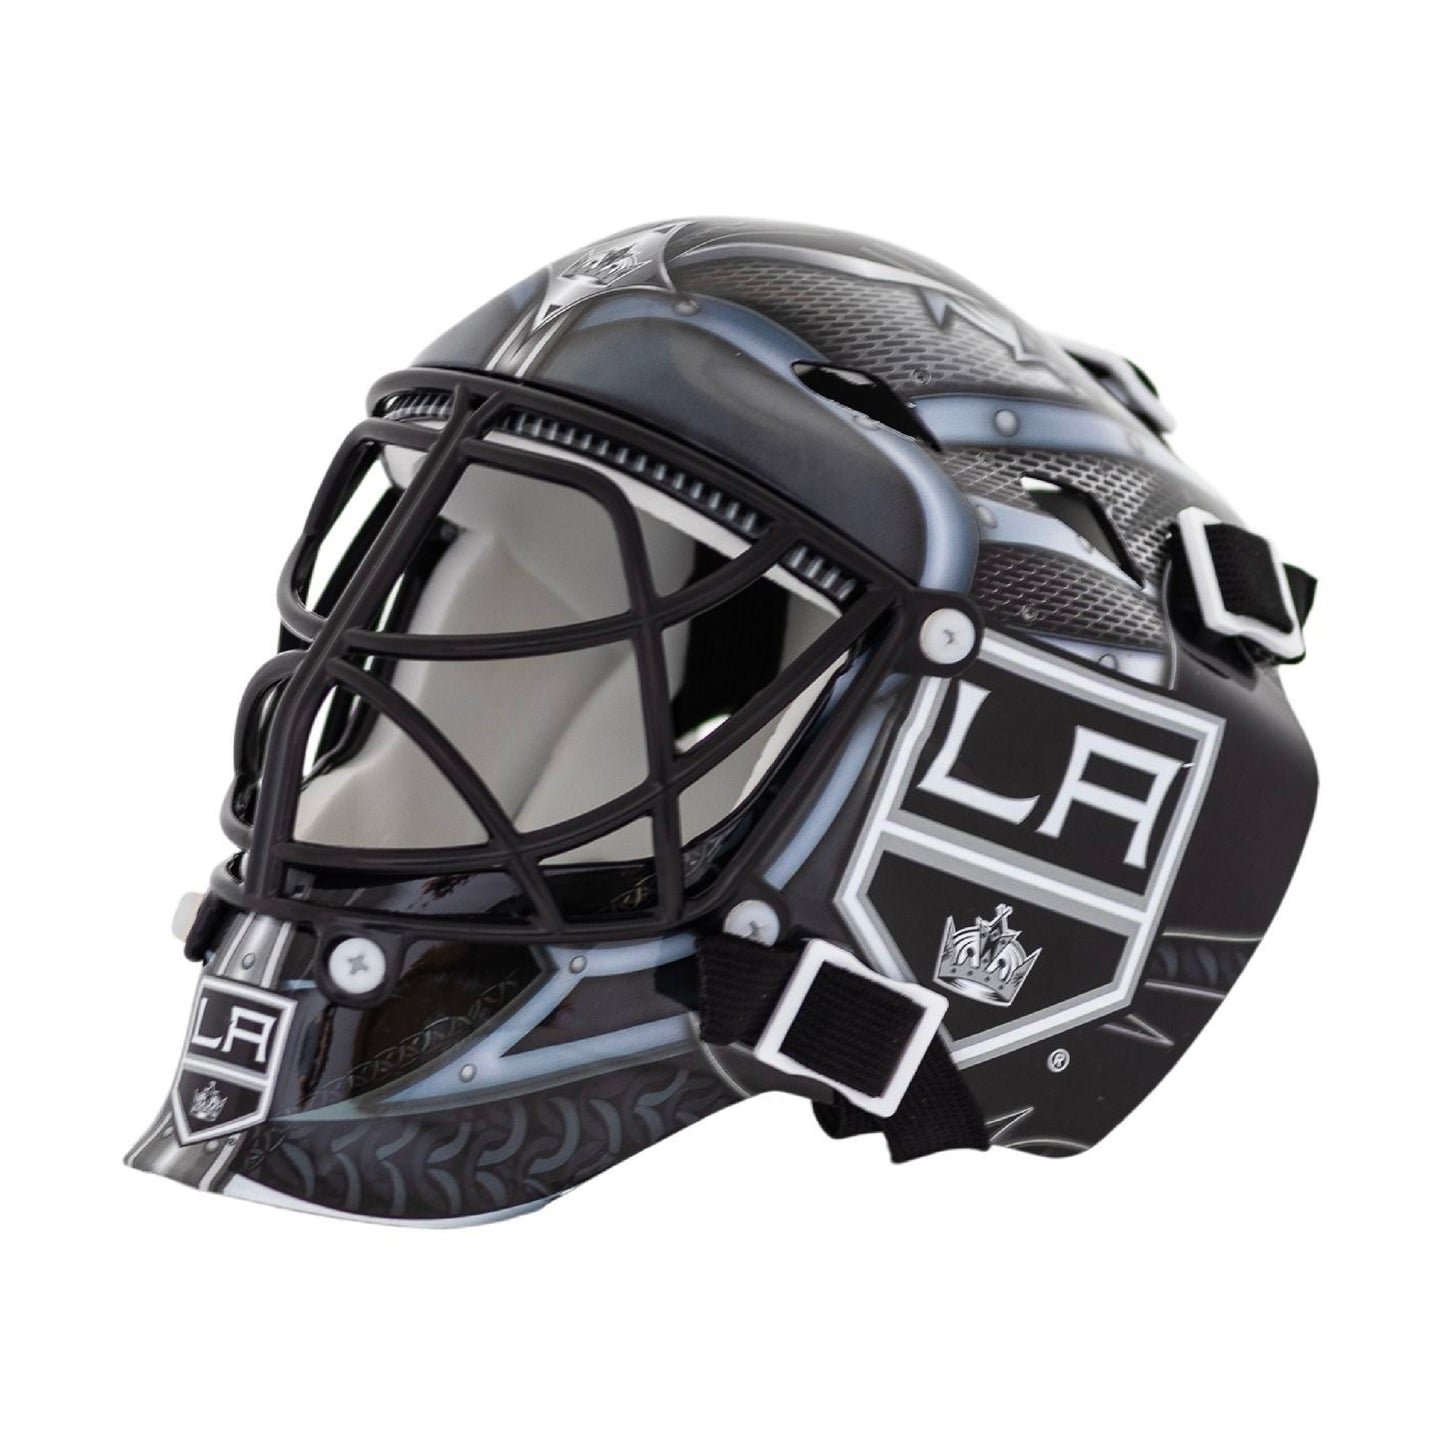 Los Angeles Kings Mini Goalie Mask